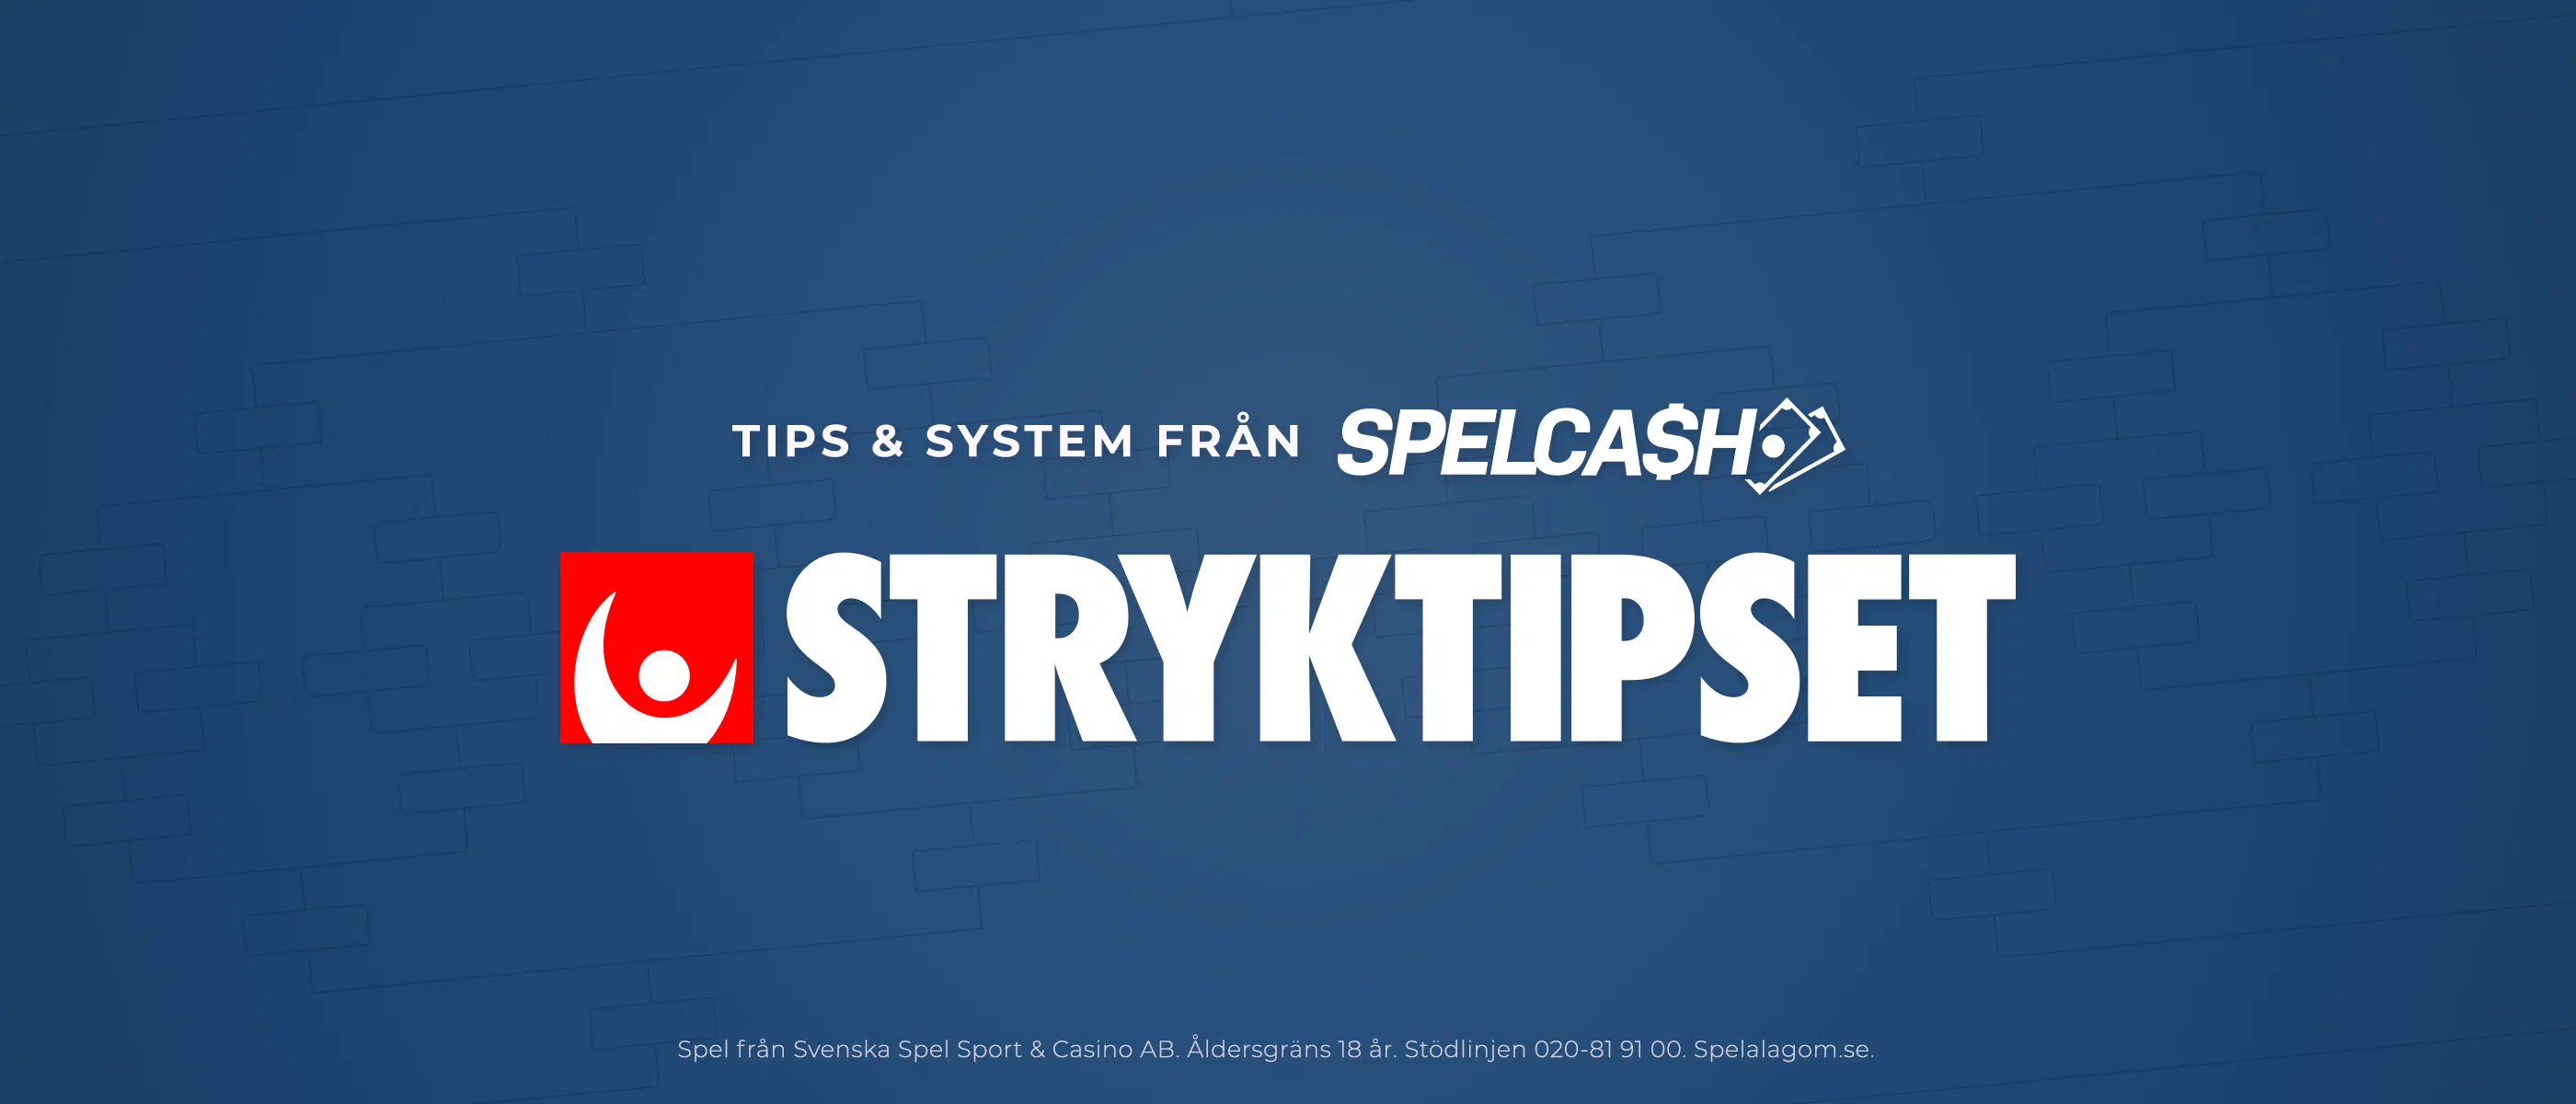 Stryktipset tips från Spelcash